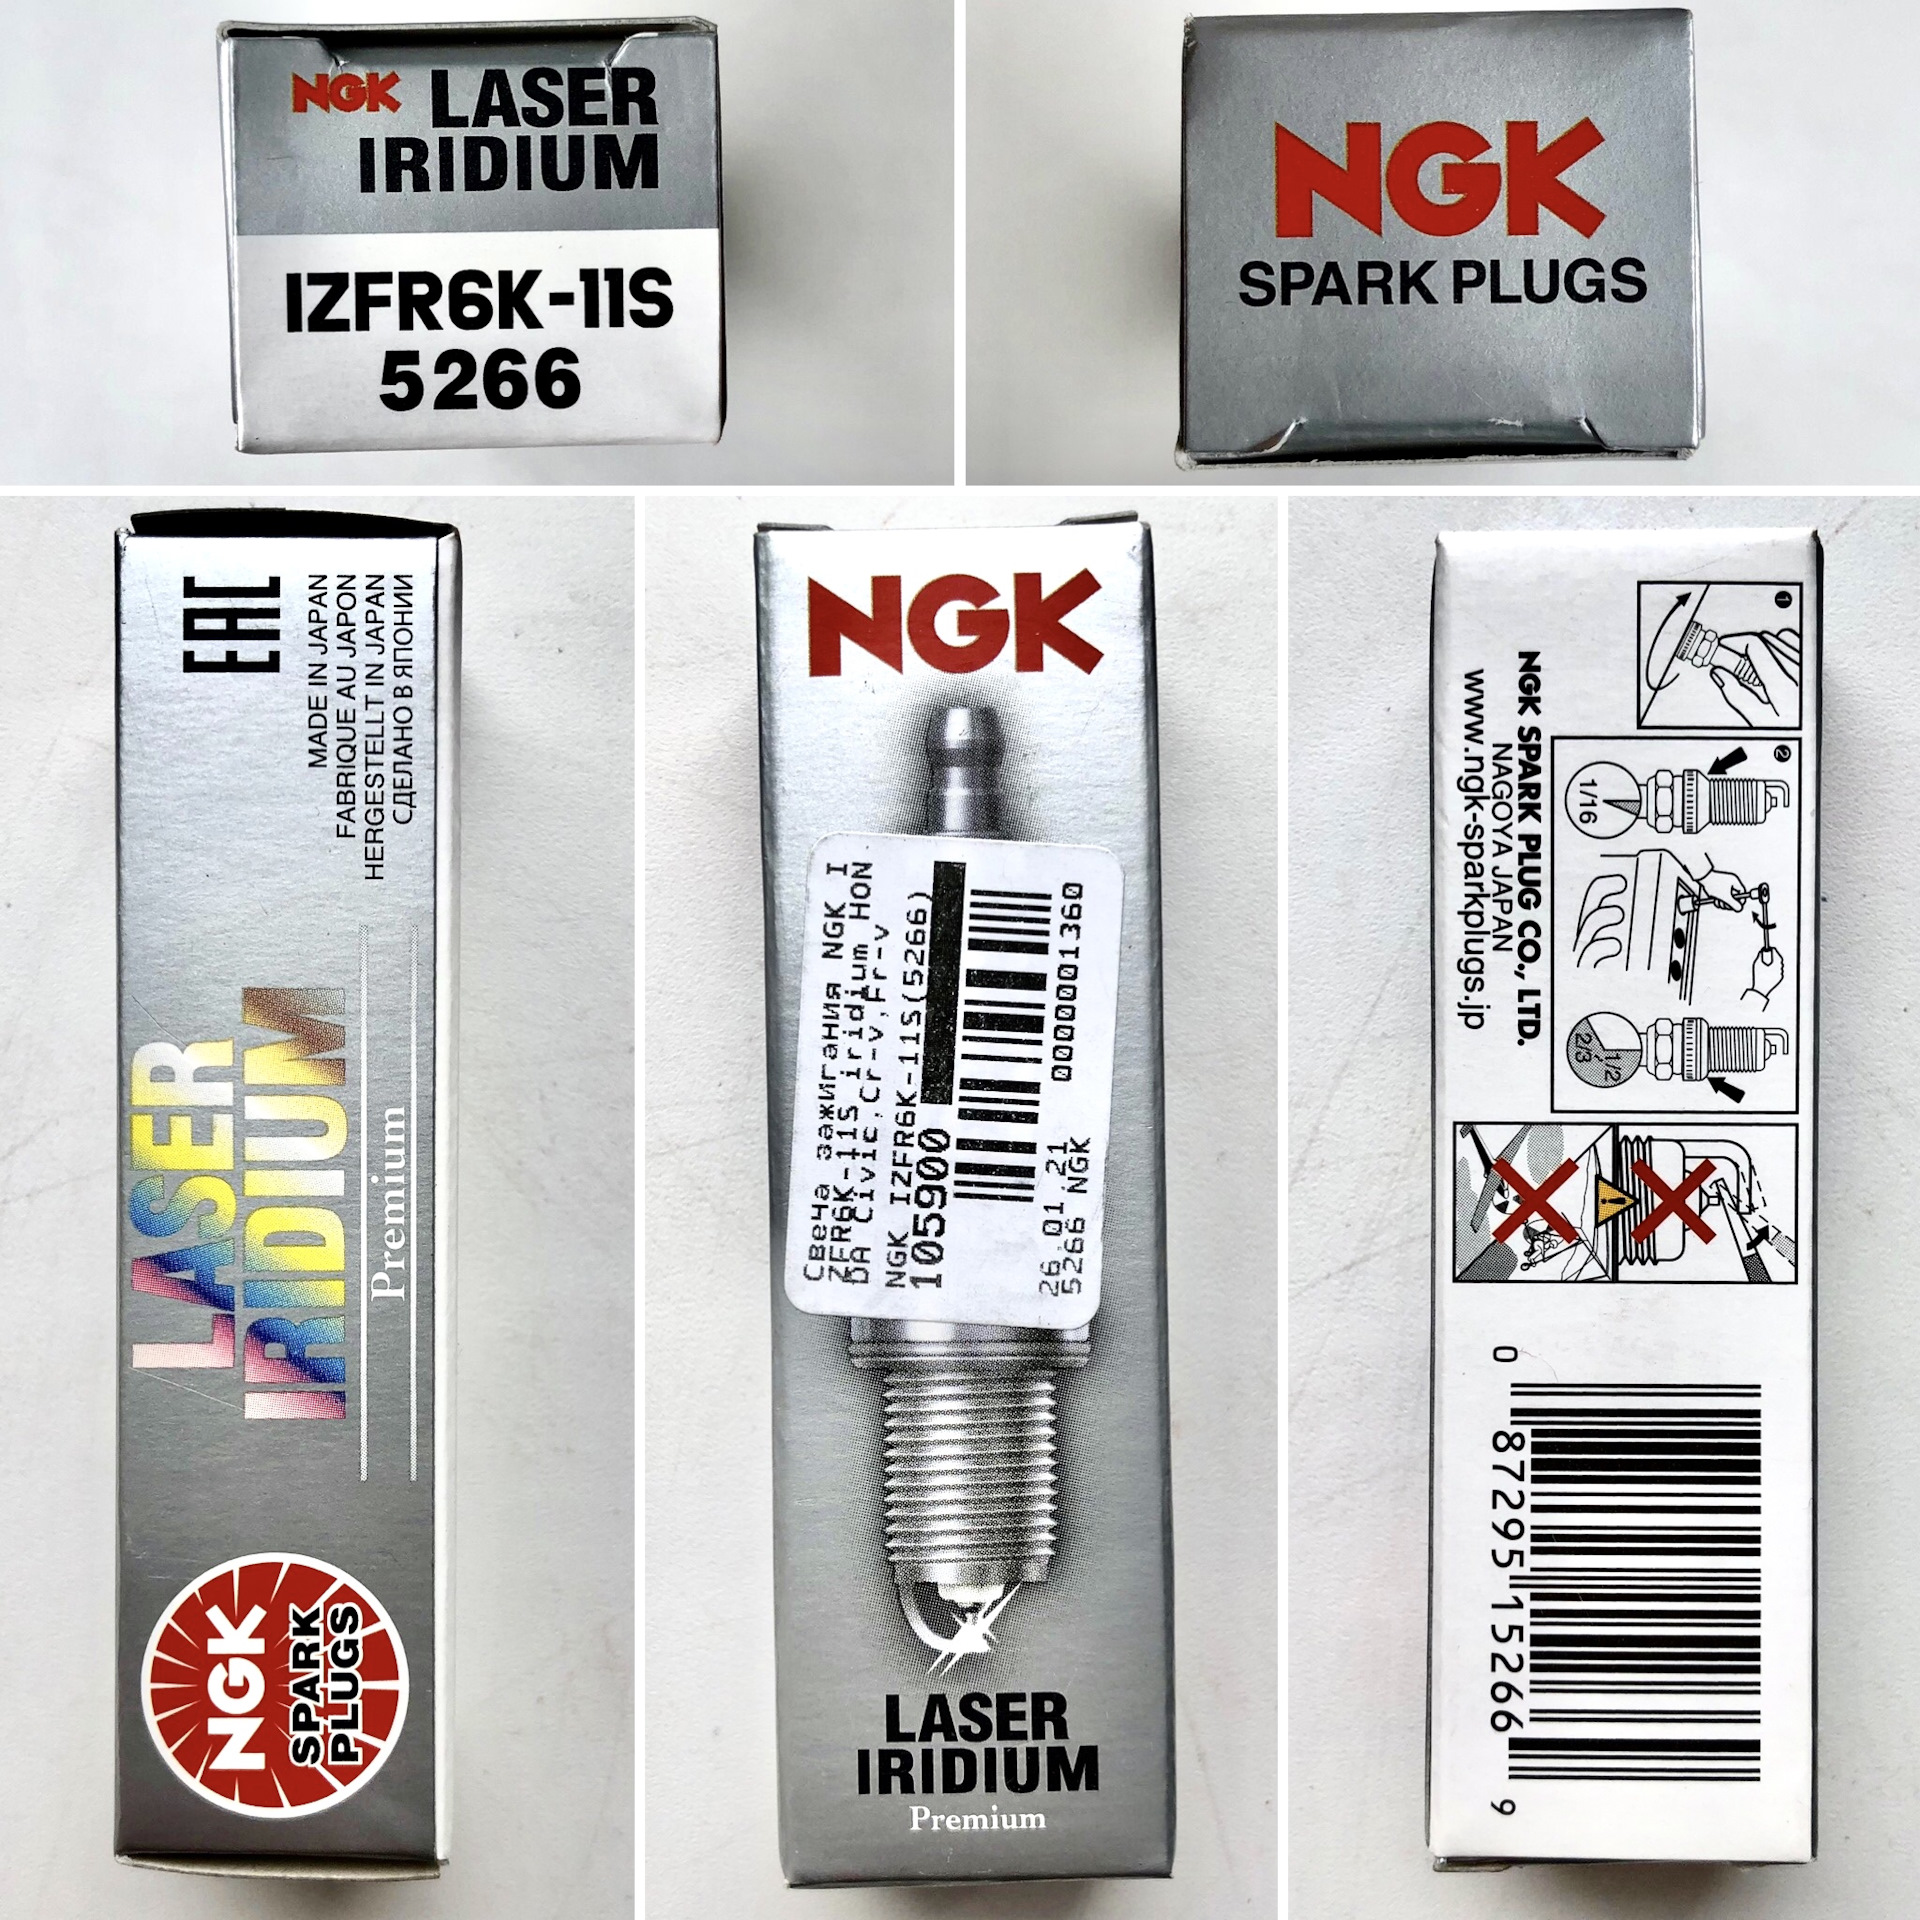 Ngk как отличить подделку от оригинала. NGK izfr6k-11 размер ключа. Izfr6k-11s от NGK В упаковке NGK. Свечи зажигания Хонда Аккорд 8 2.4. Оригинальная упаковка свечи NGK izfr6k11s.